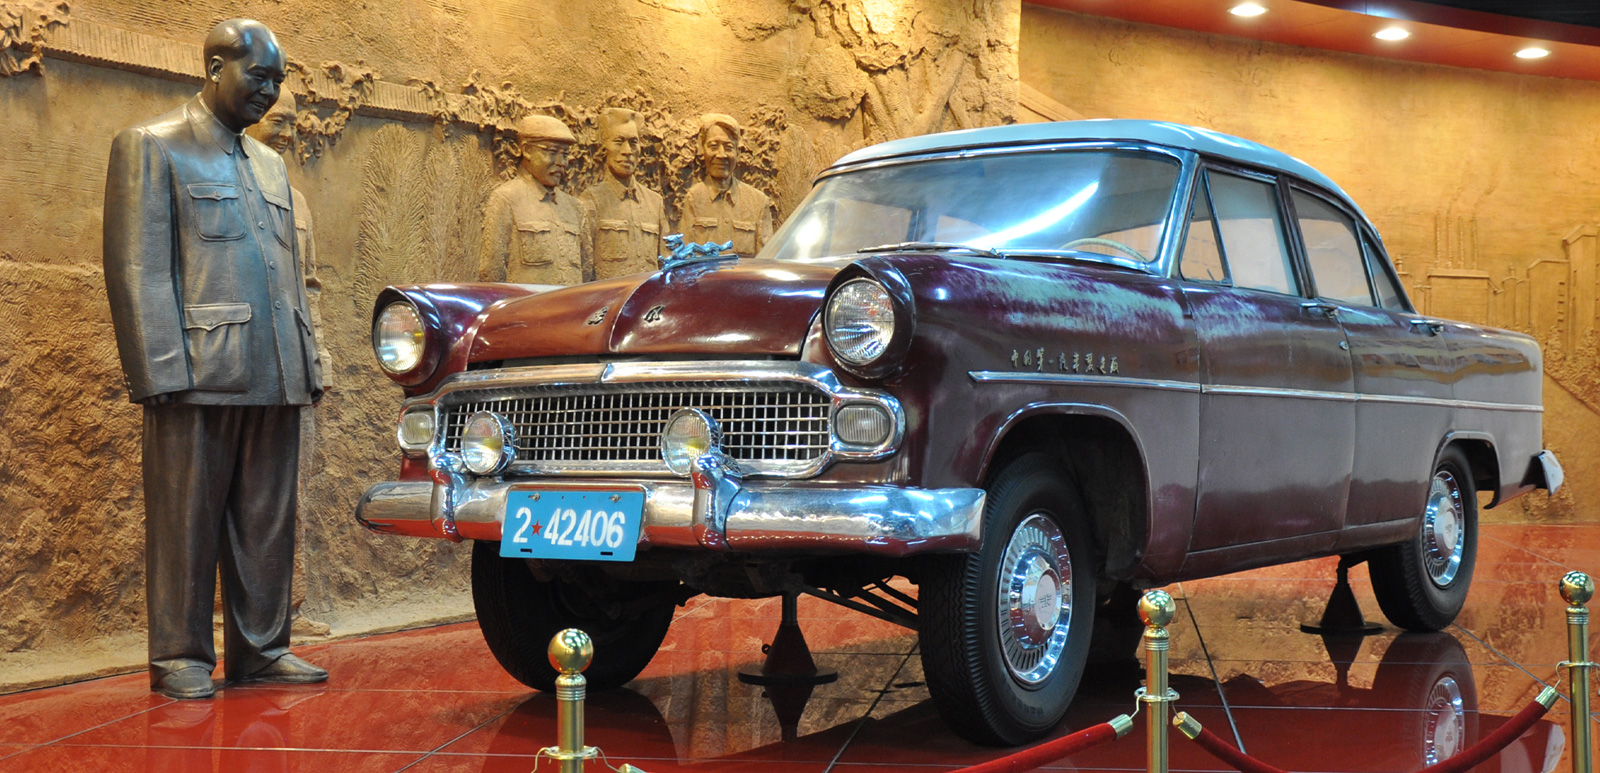 От копий «Волги» до лимузинов: какими были первые китайские автомобили